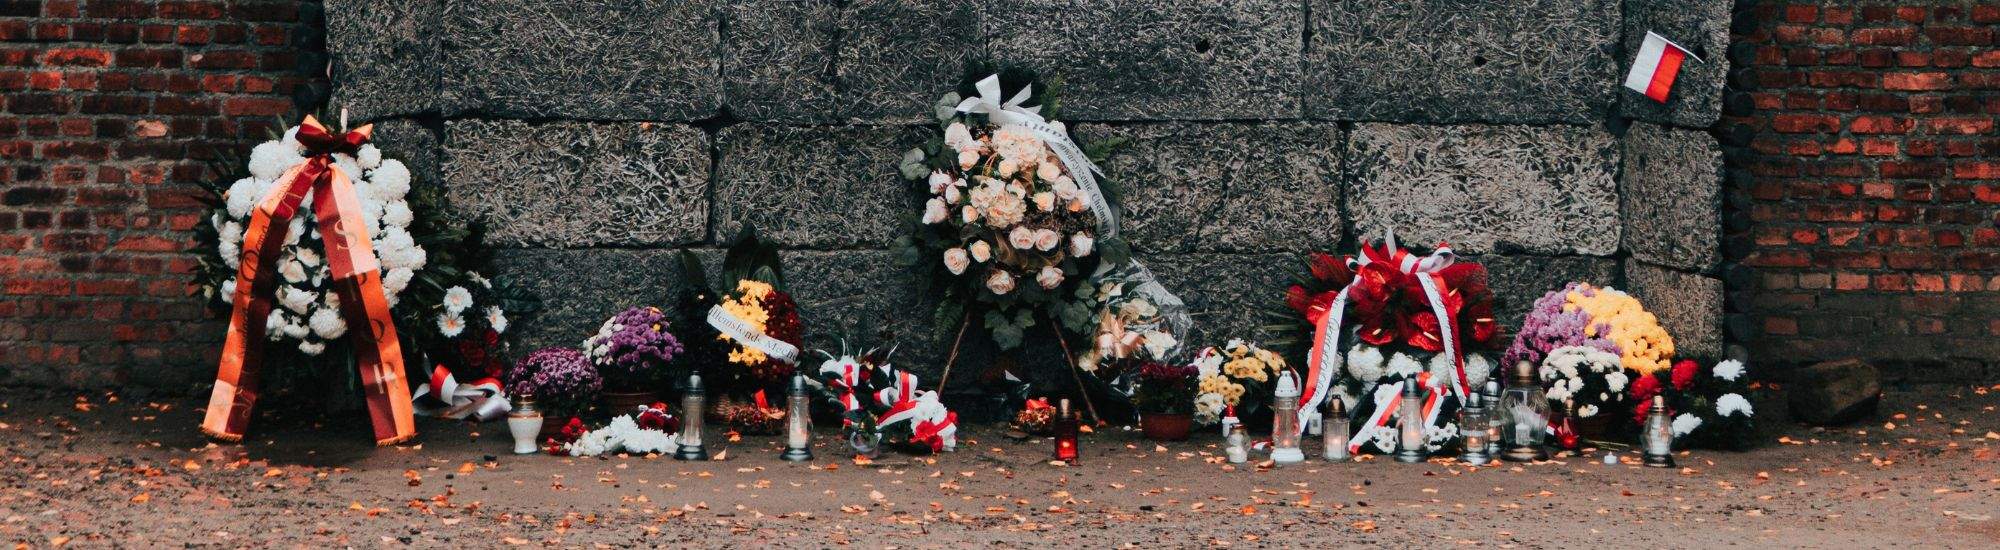 79e Herdenking van de Opstand van Warschau: Een eerbetoon aan de gedeporteerden